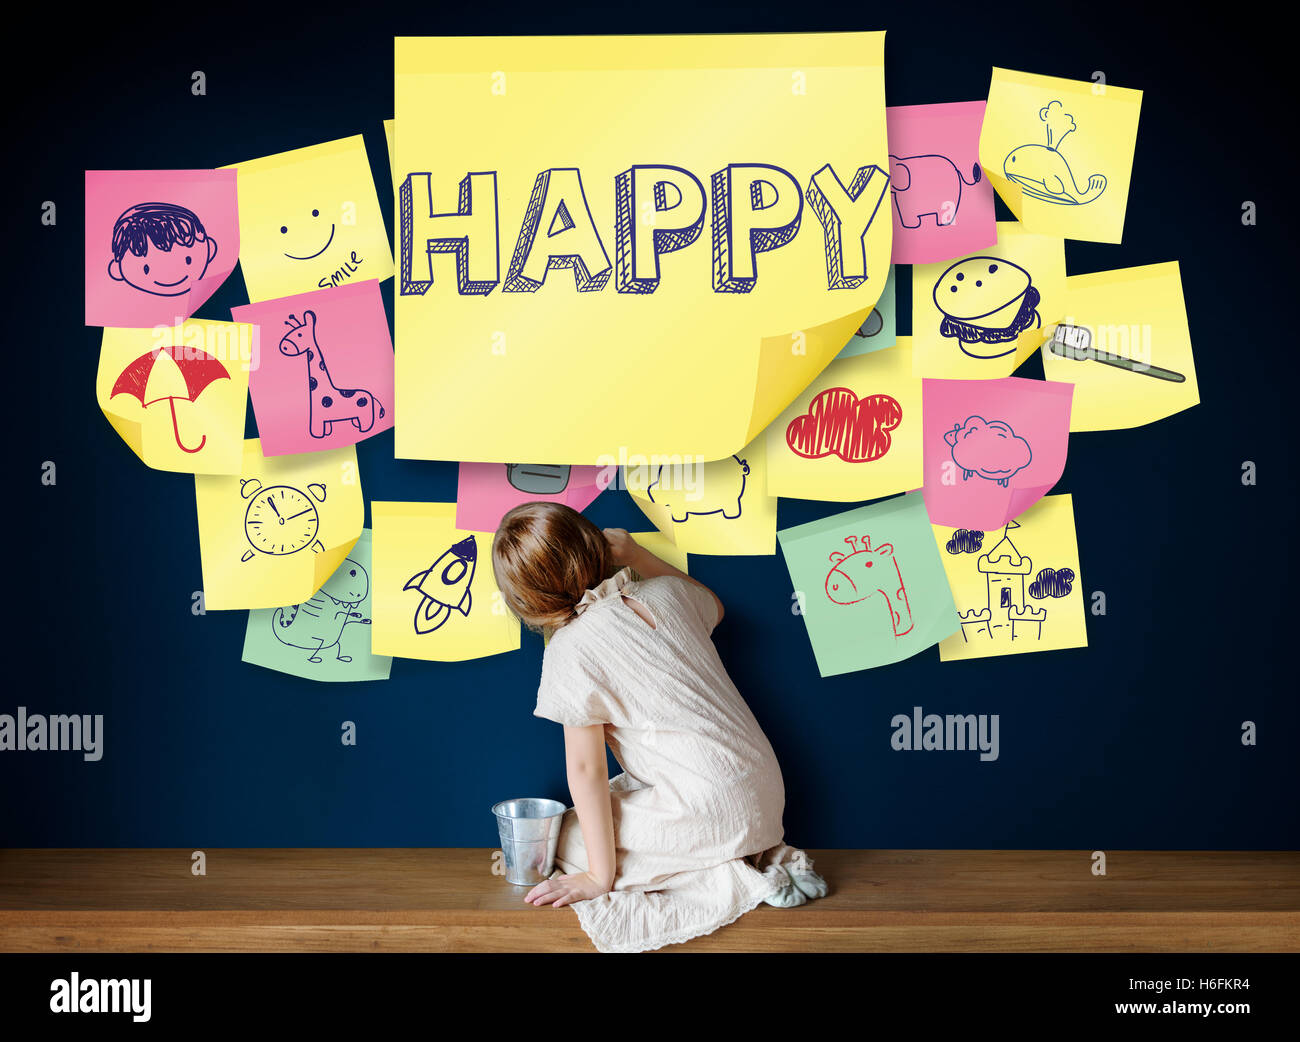 Los niños juguetones felicidad goce infancia concepto Foto de stock